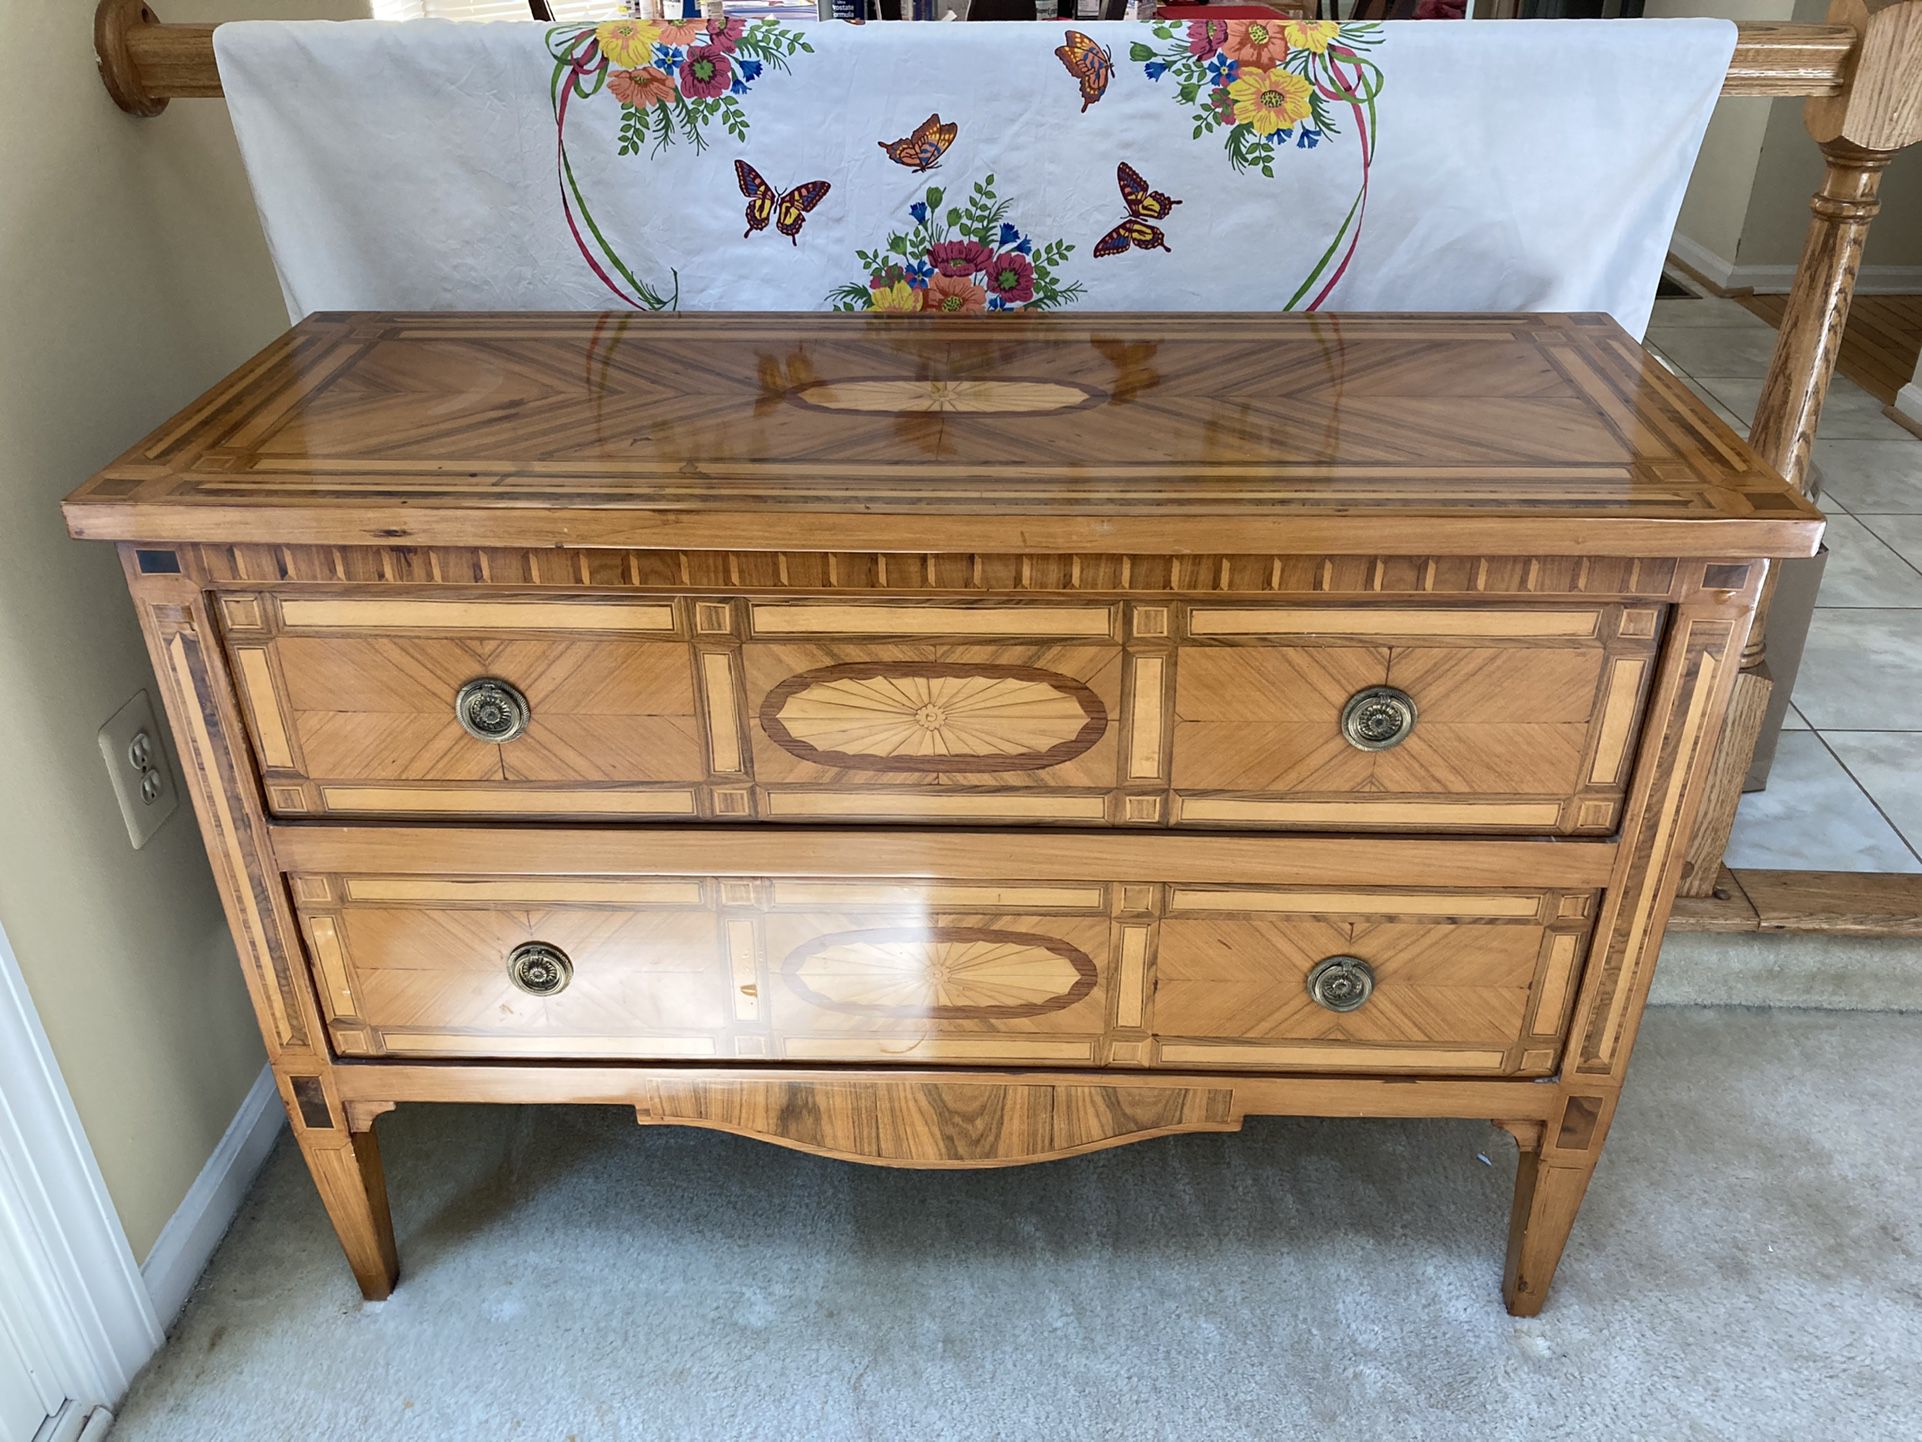 Antique side table/dresser